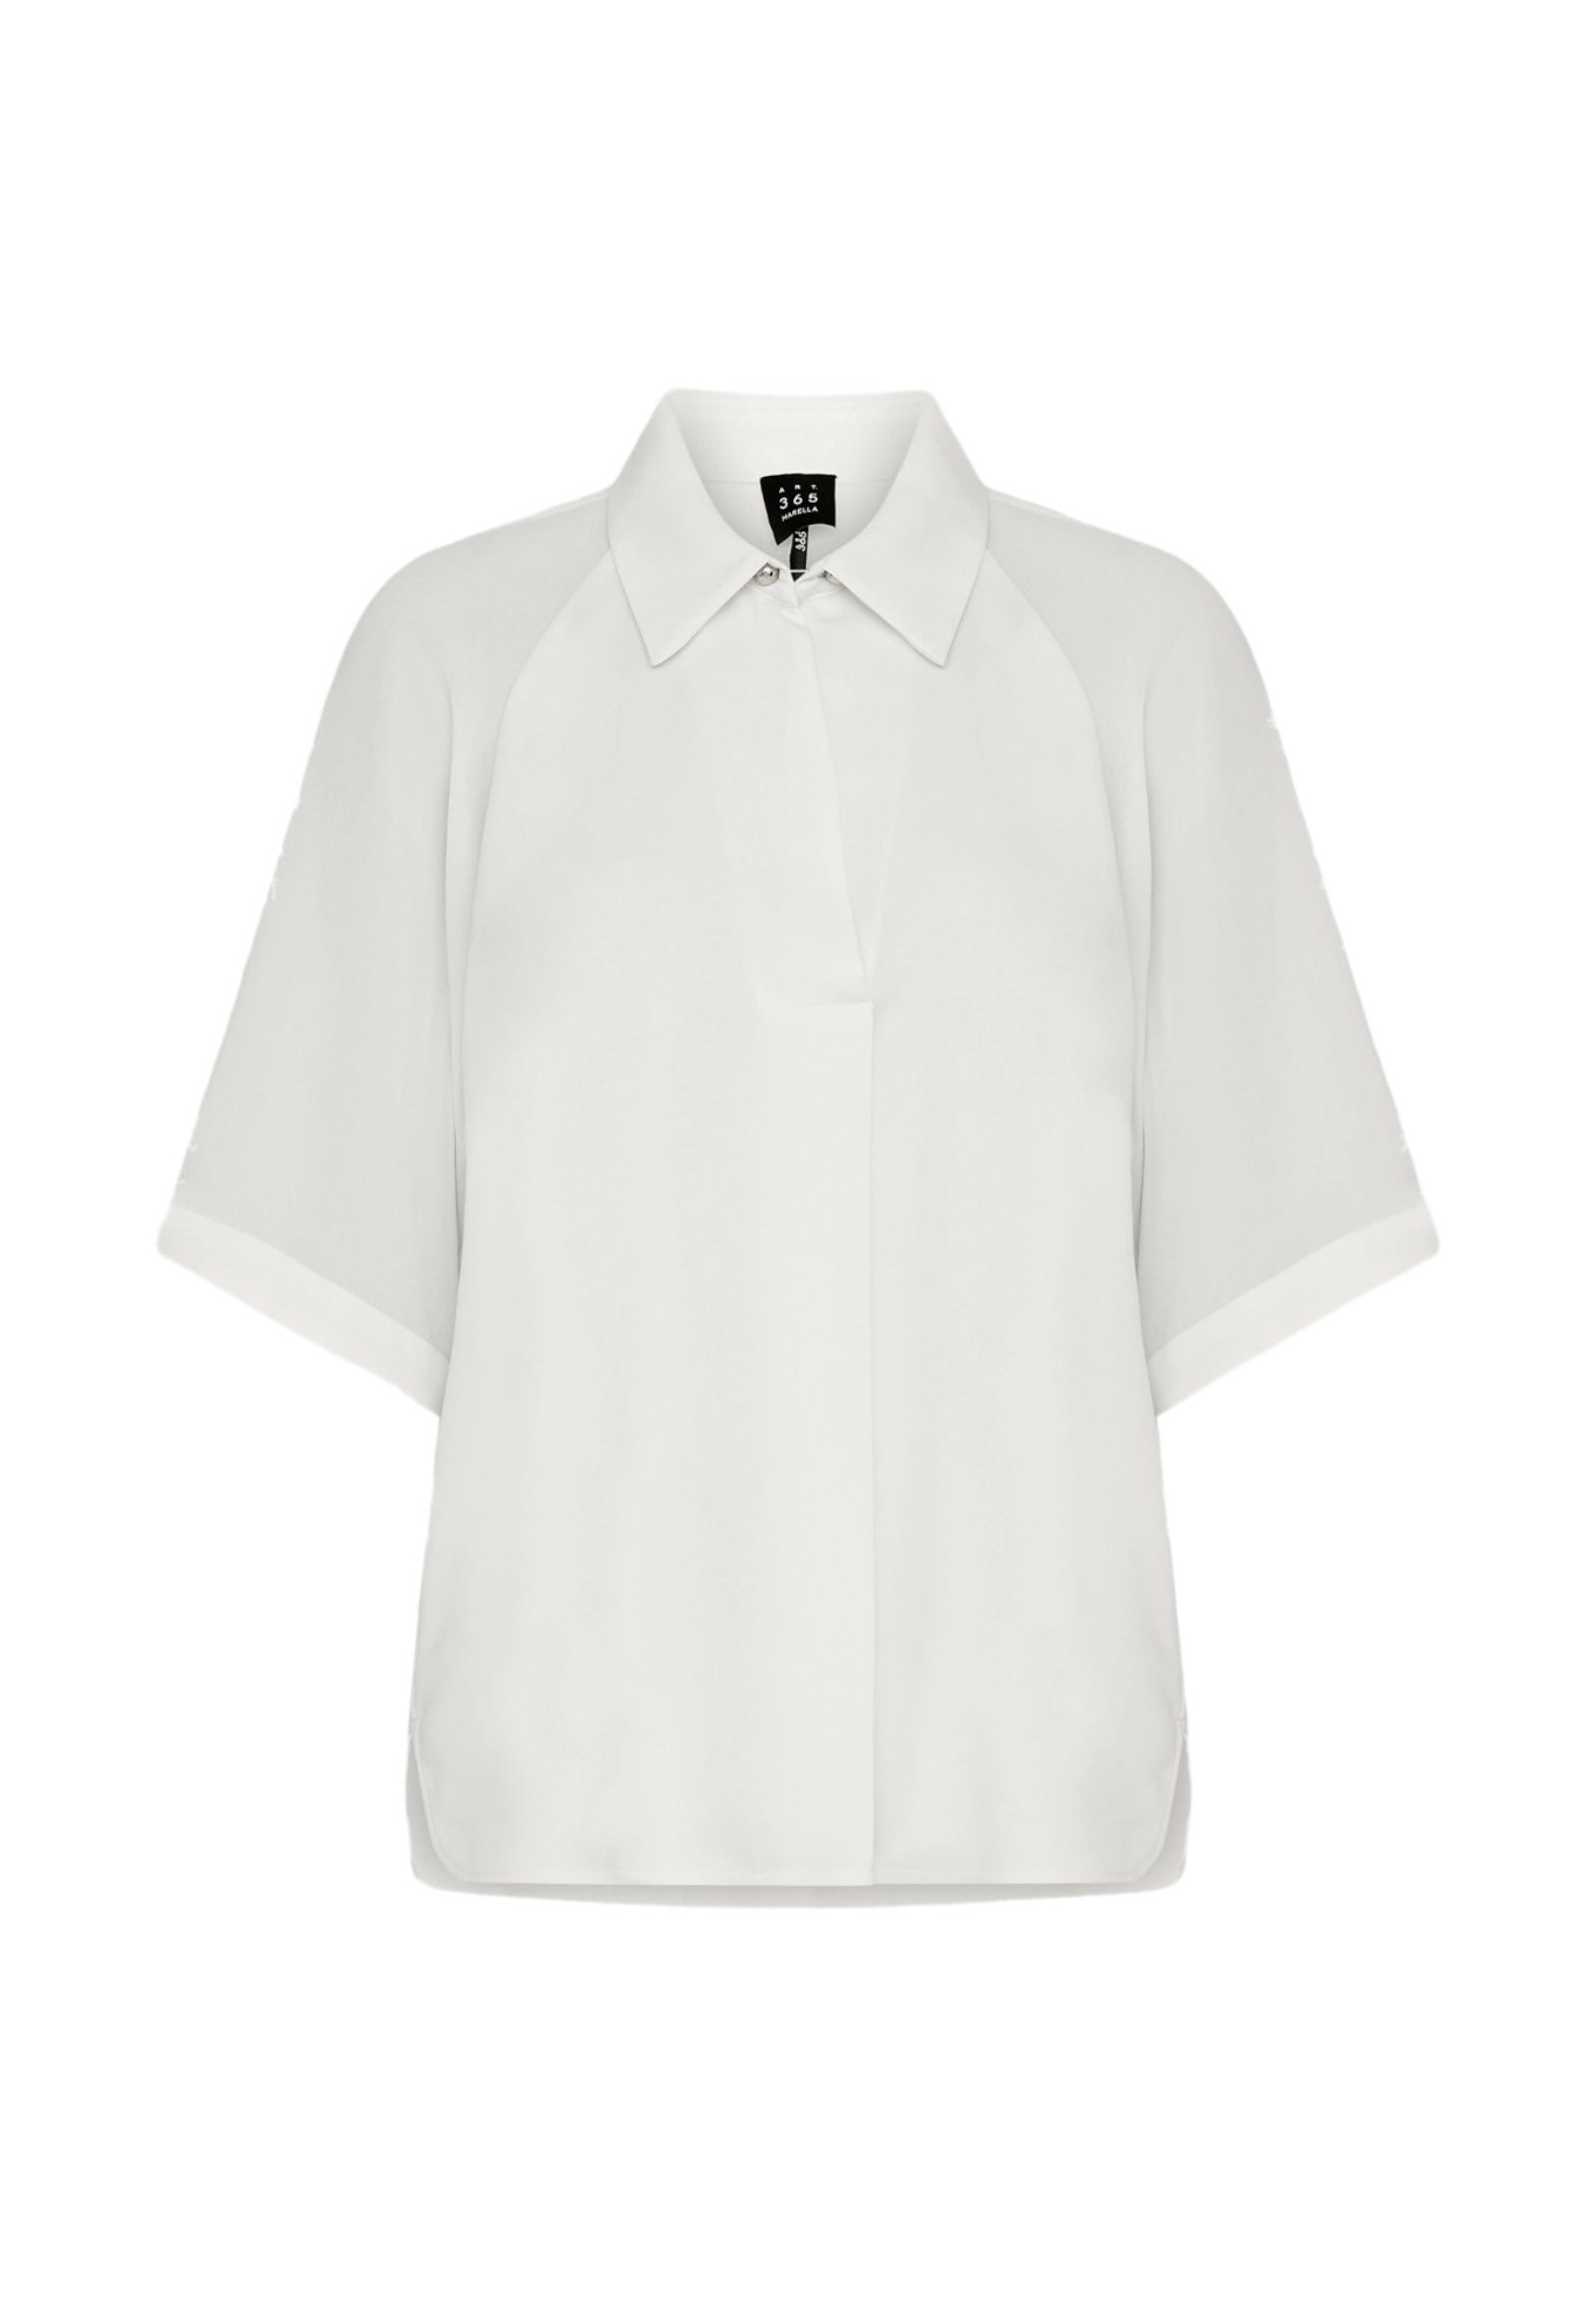 Cerberus White Wool Shirt